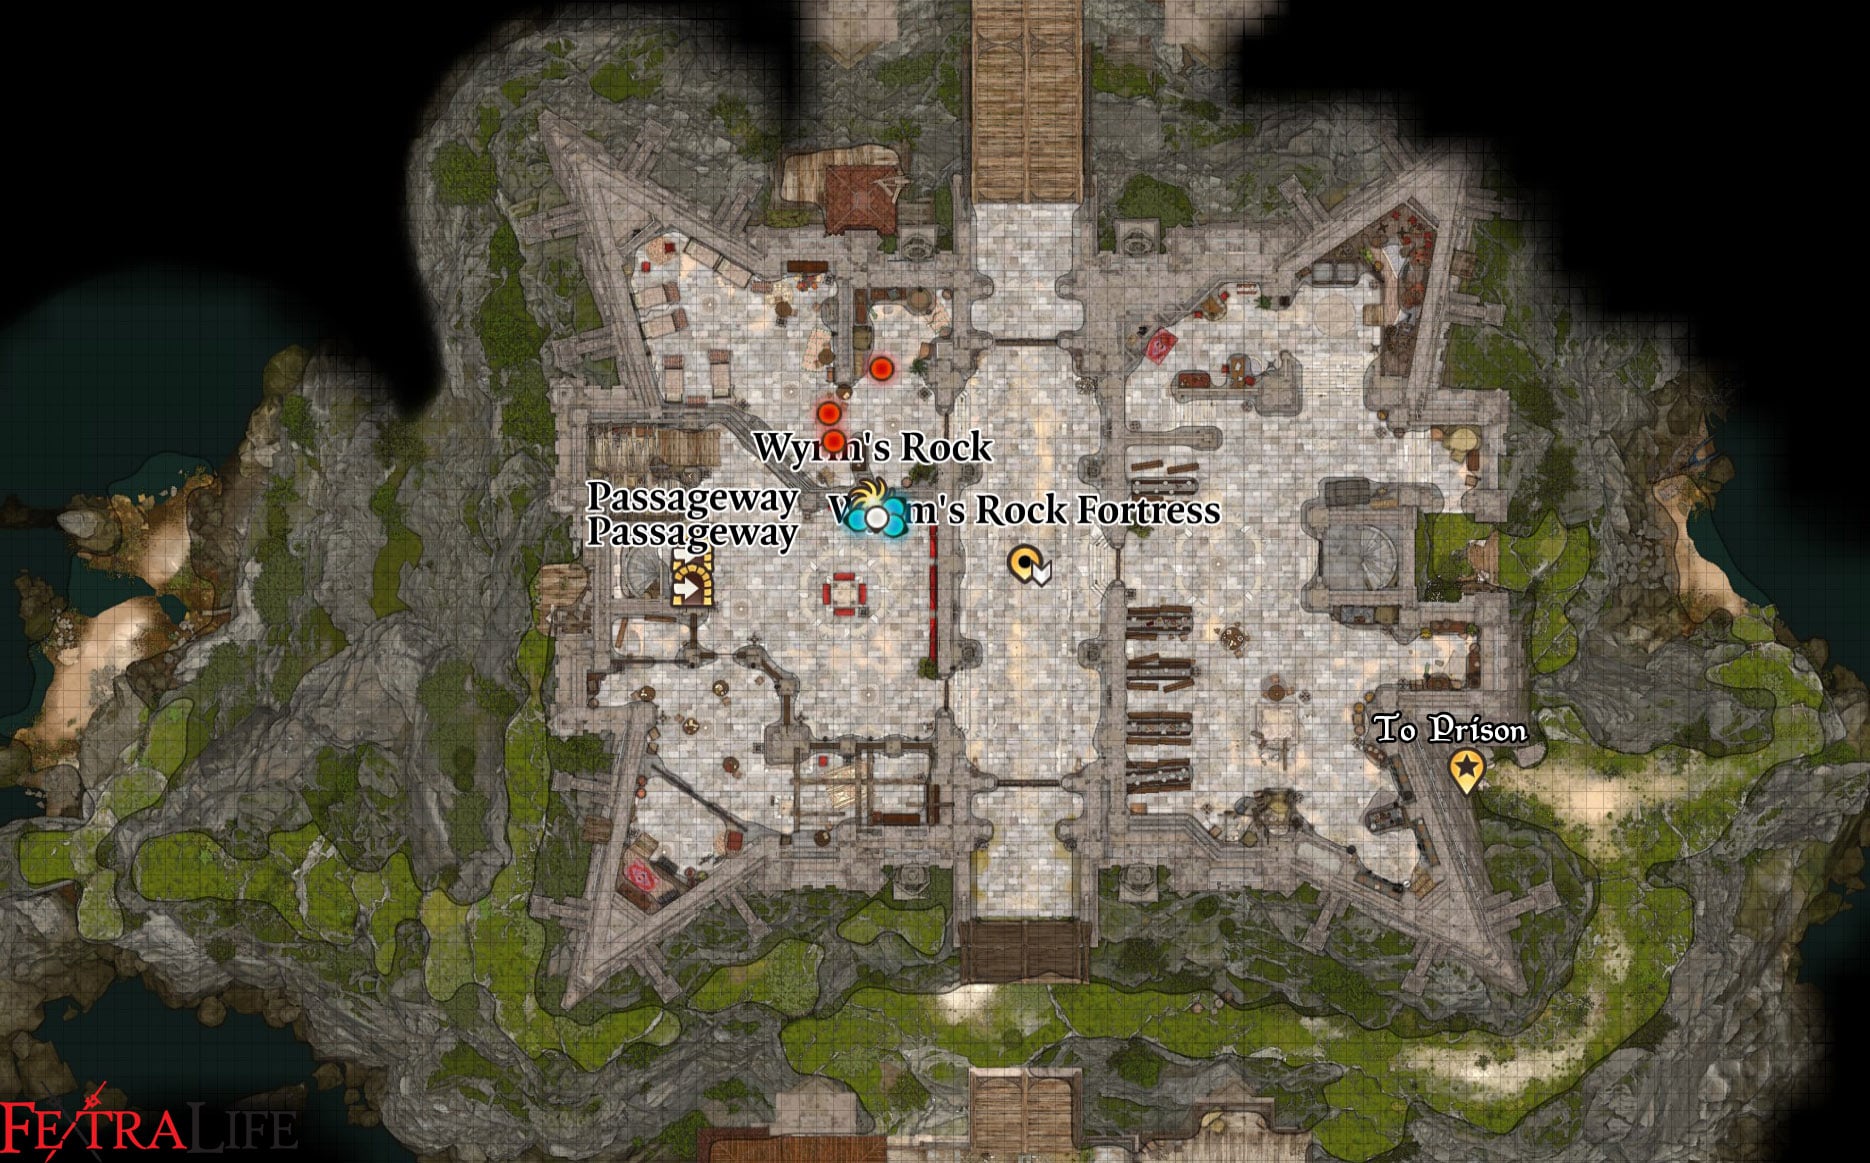 How to Escape Wyrm's Rock Prison in Baldur's Gate 3